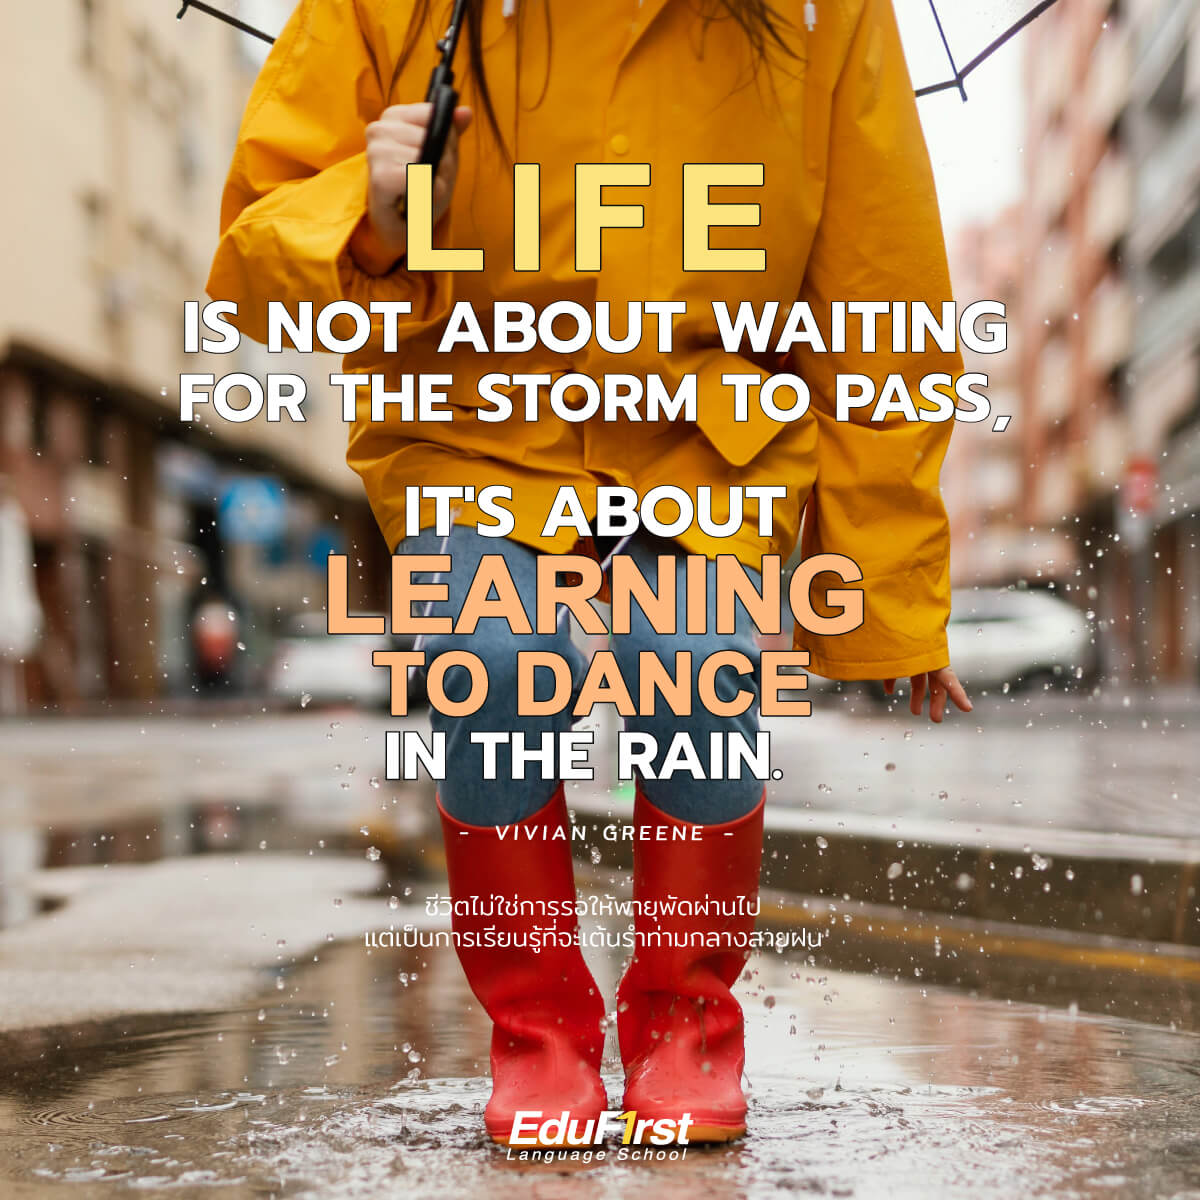 คำคมภาษาอังกฤษ Life Quote "Life isn't about waiting for the storm to pass. It's about learning to dance in the rain." - Vivian Greene<br />
ชีวิตไม่ใช่การรอให้พายุพัดผ่านไป แต่เป็นการเรียนรู้ที่จะเต้นรำท่ามกลางสายฝน